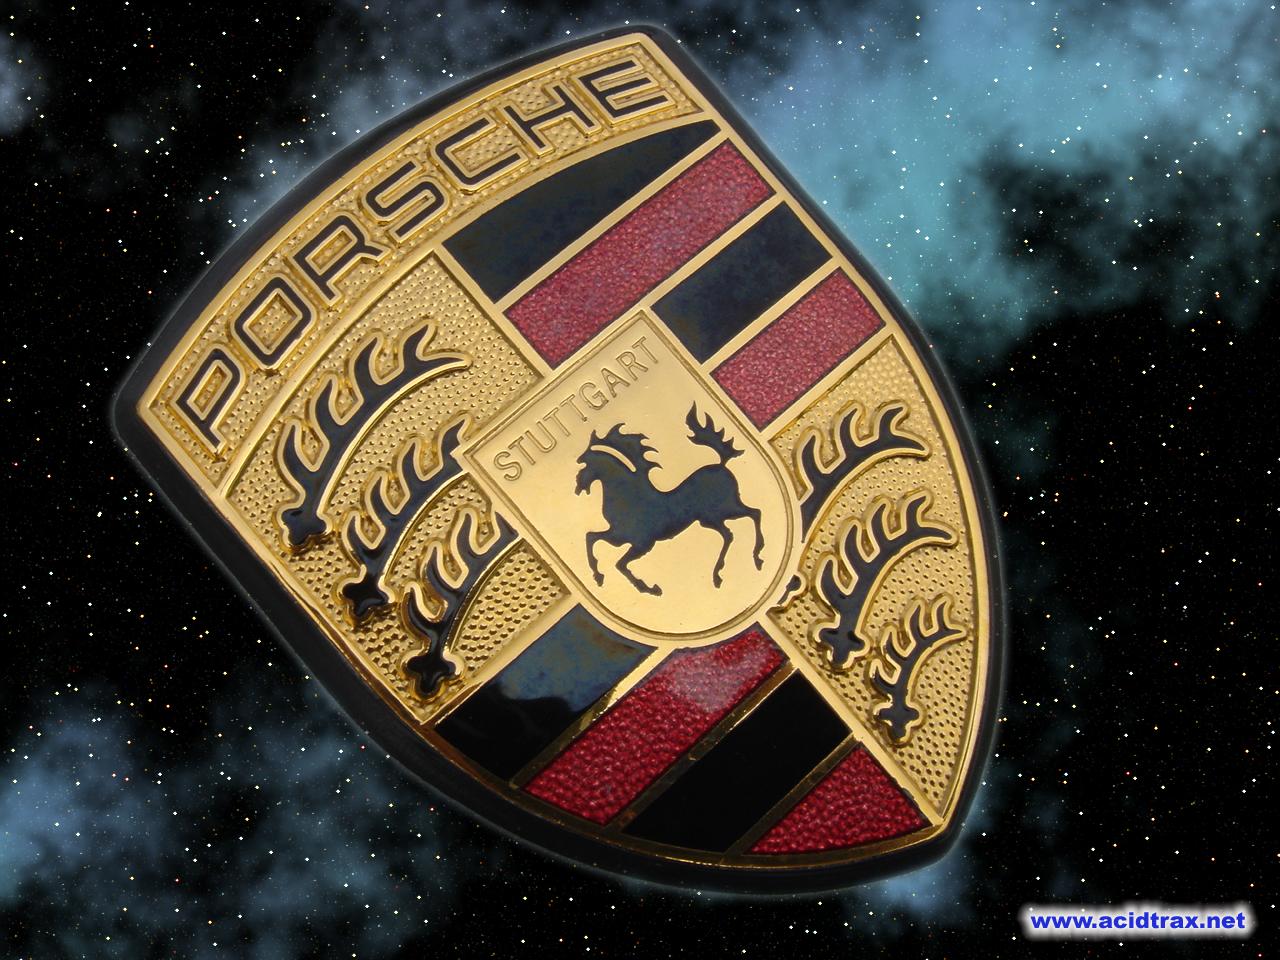 Porsche Logo 2013 Geneva Motor Show